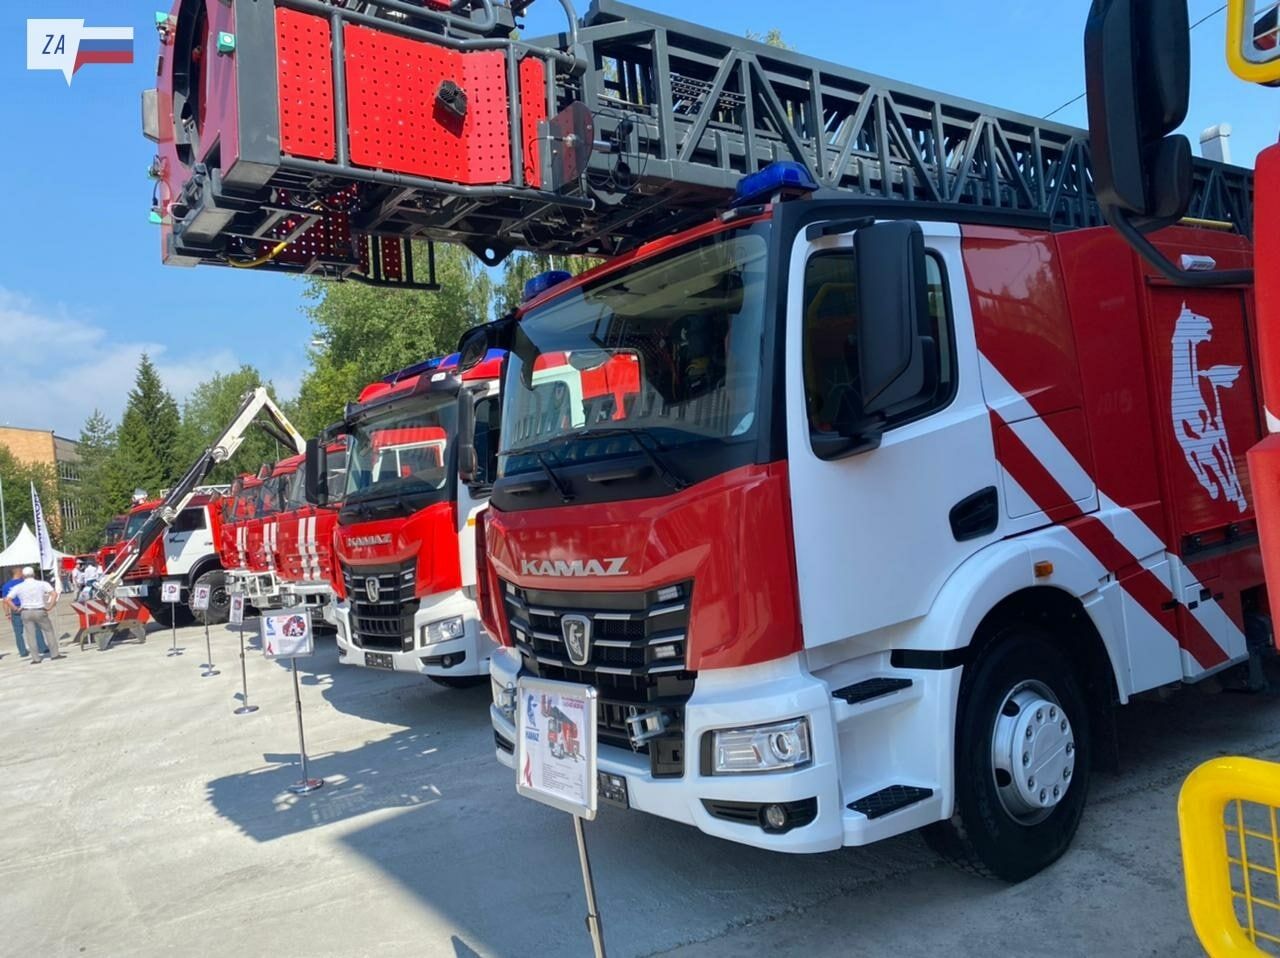 ПАО «КАМАЗ» представил пожарную автотехнику на&nbsp;выставке в&nbsp;Подмосковье